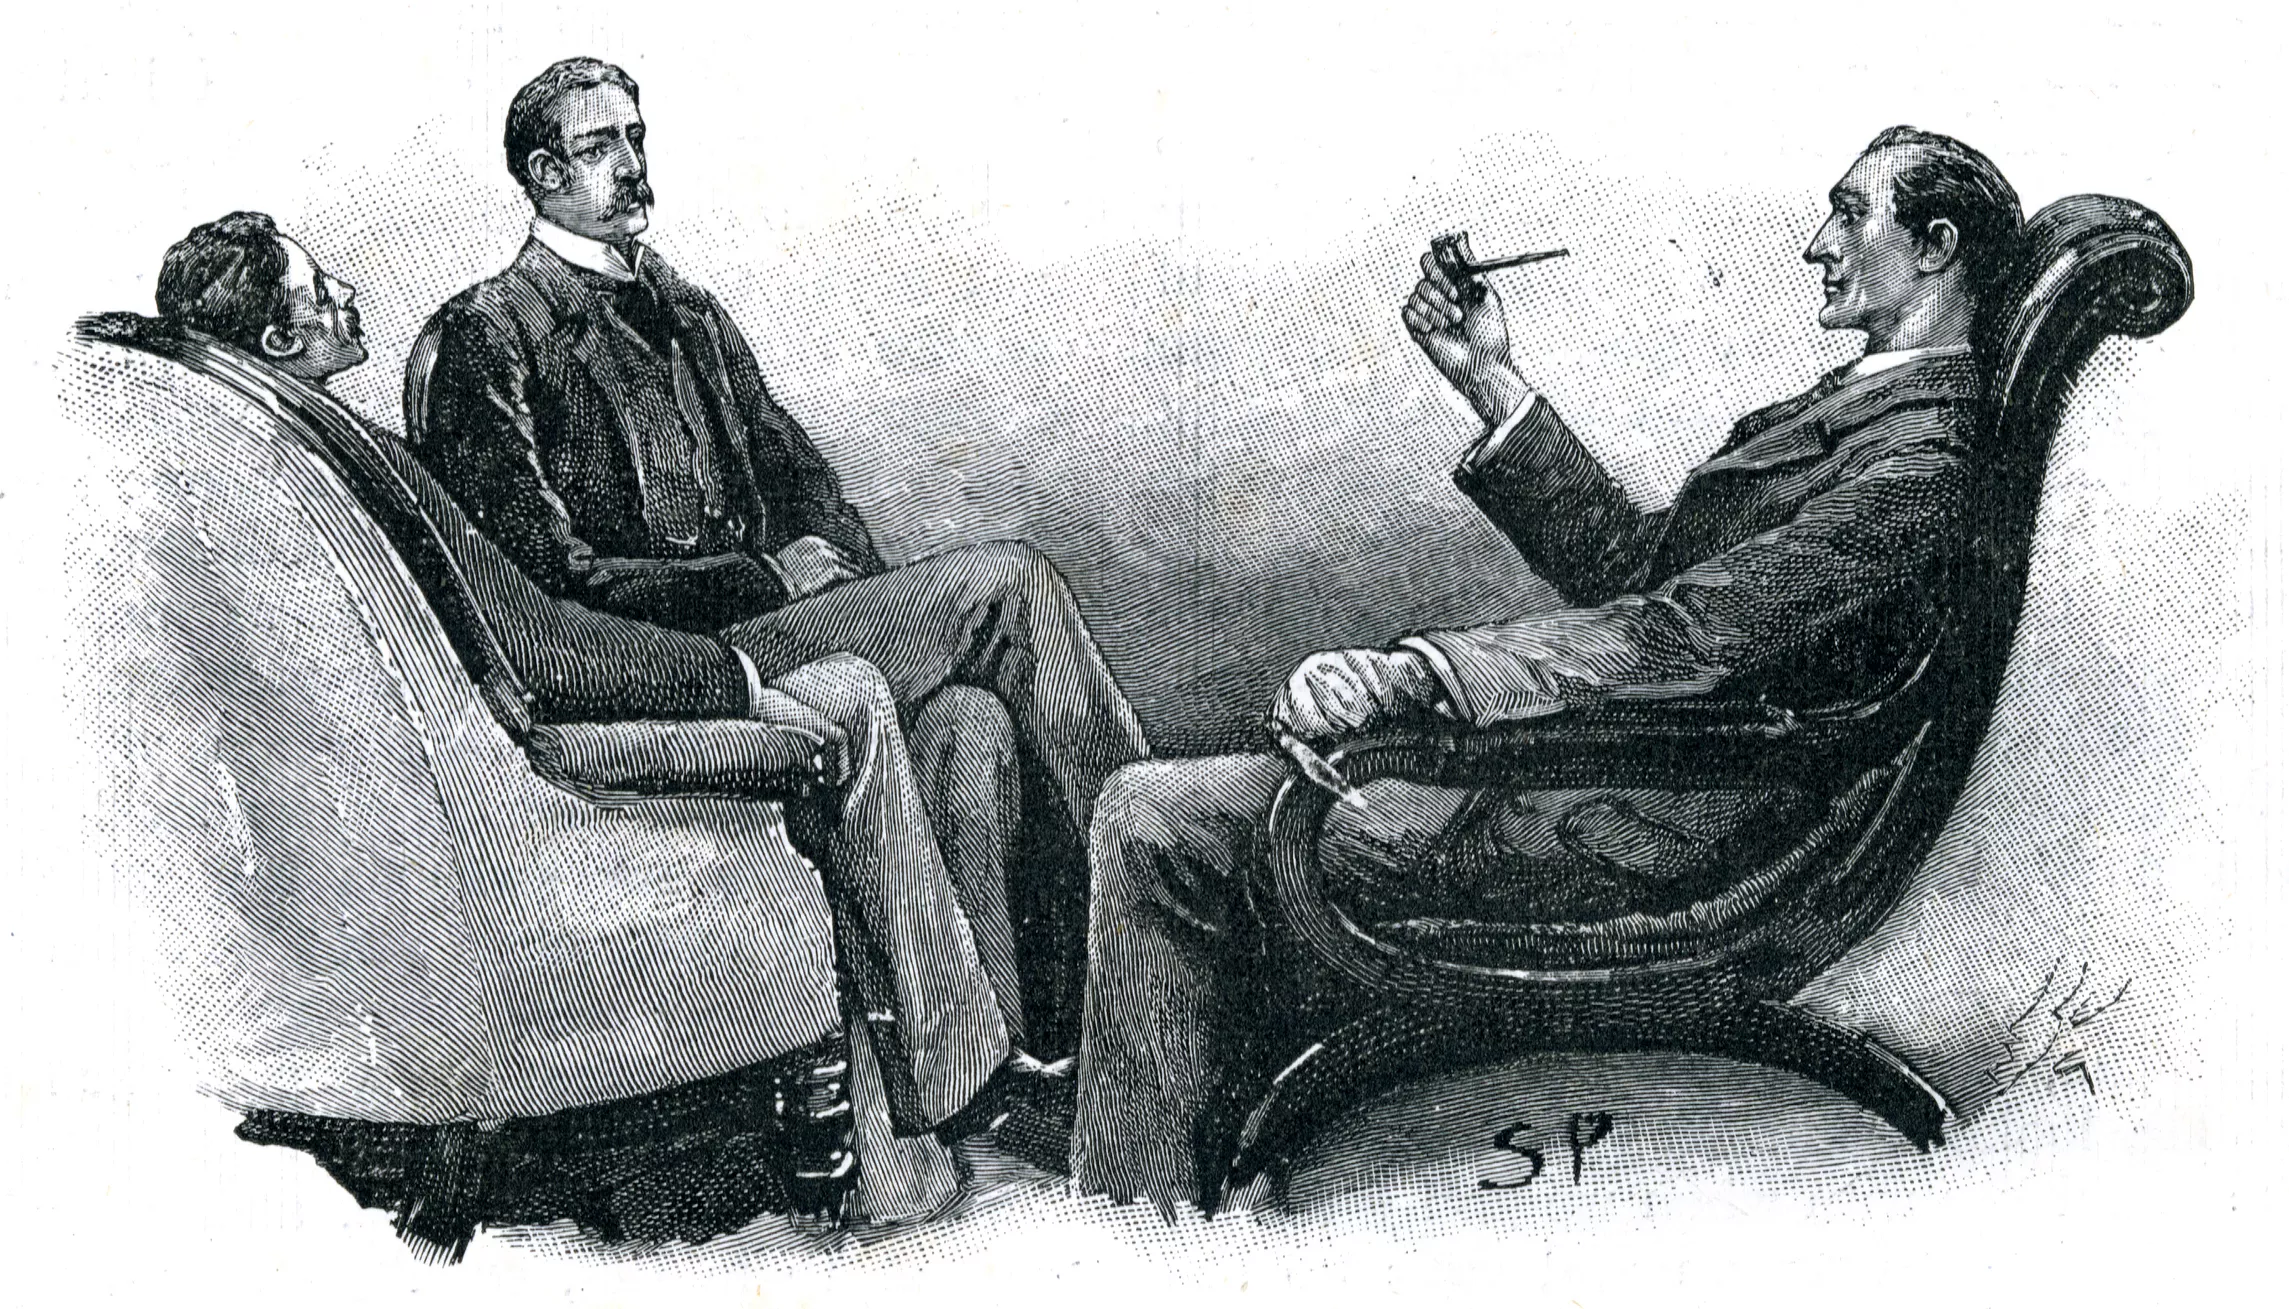 En aquesta il·lustració, Holmes apareix fumant una pipa, un element que s’acabaria incorporant a la seva iconografia